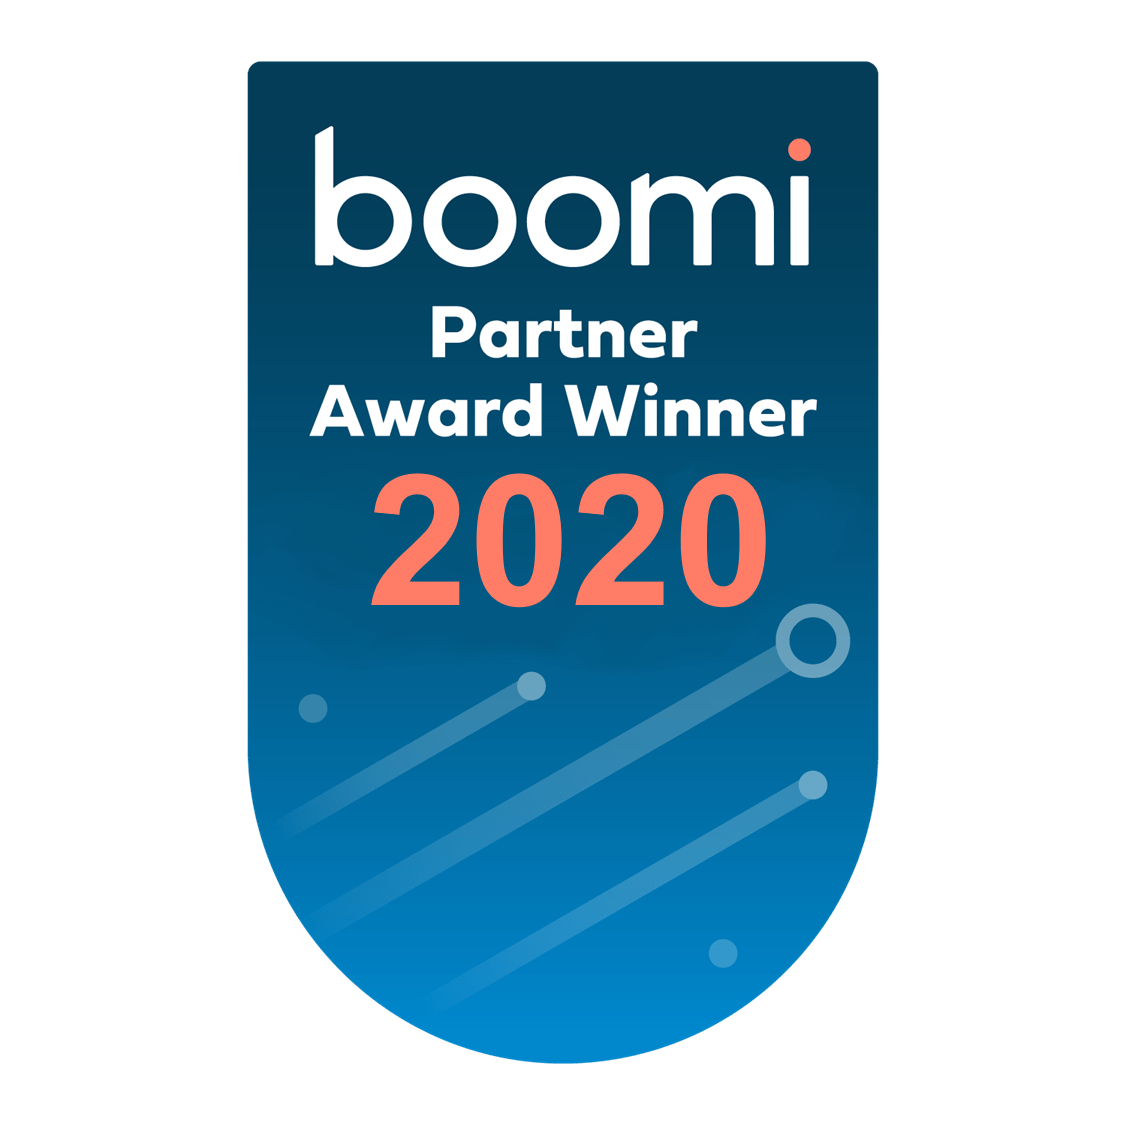 Boomi Partner Award